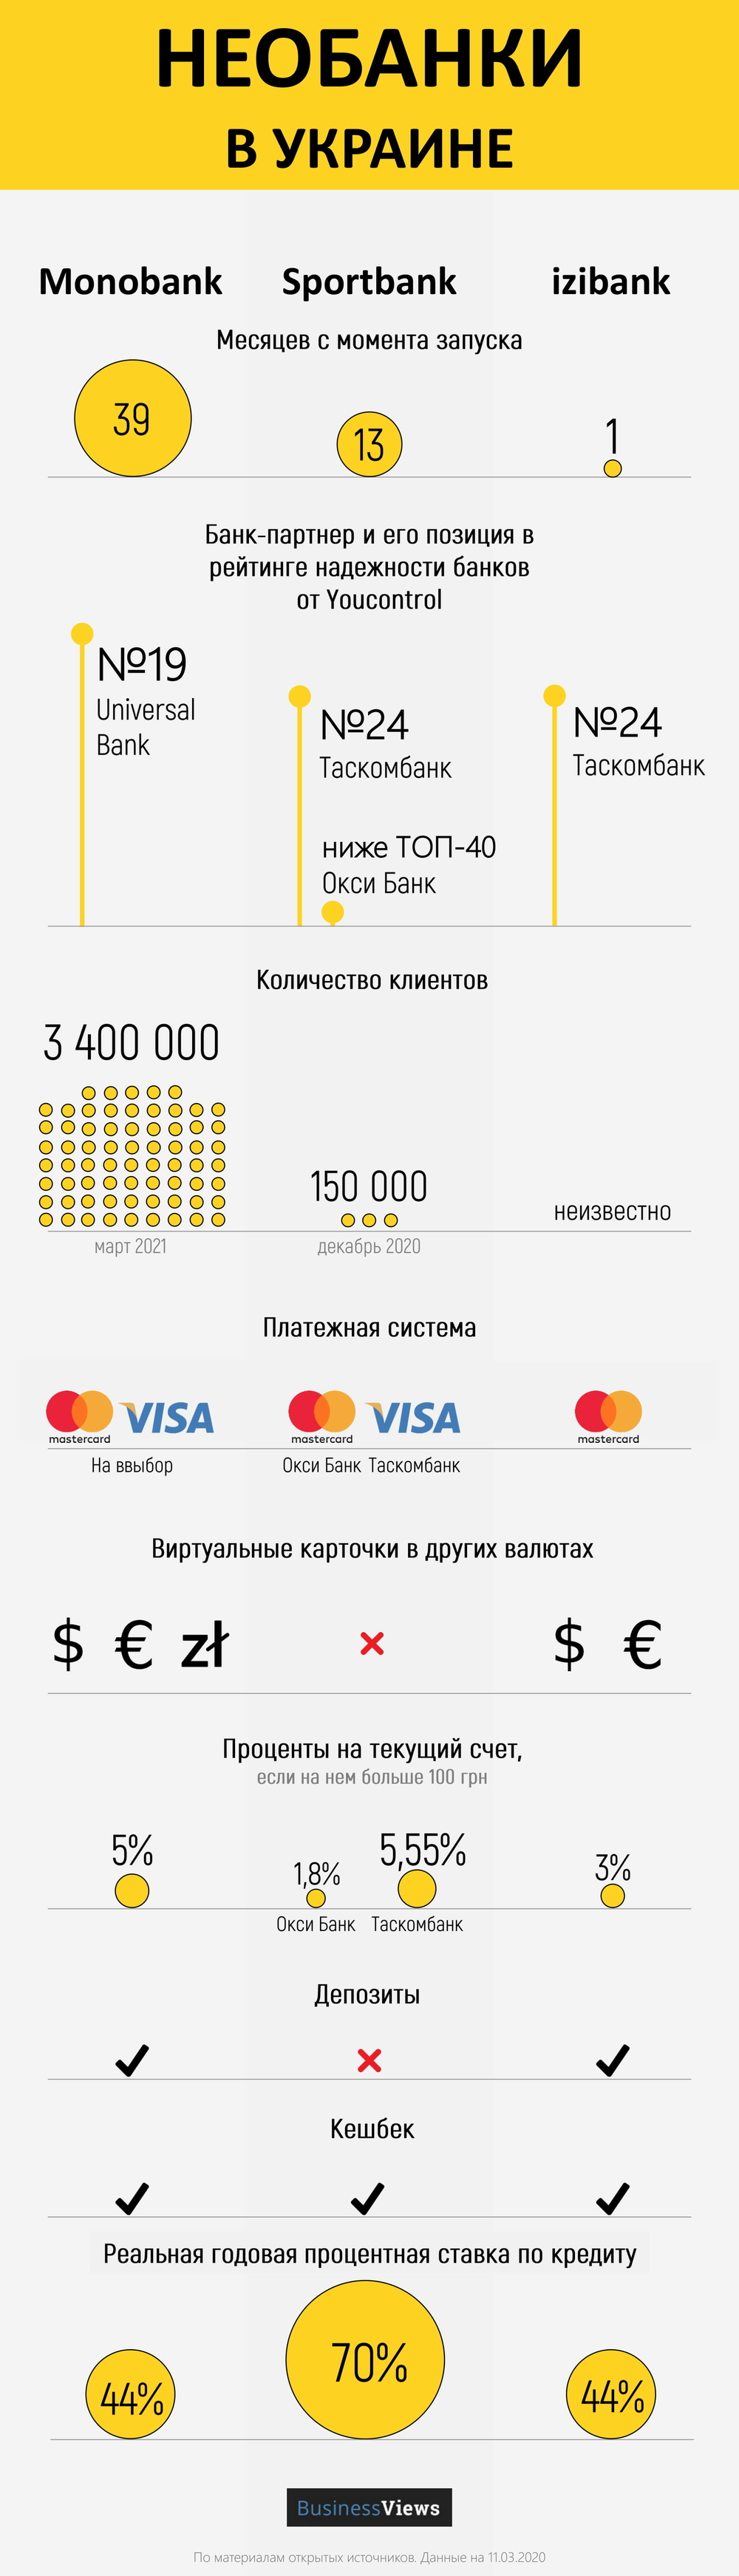 сравнение мобильных банков Украины